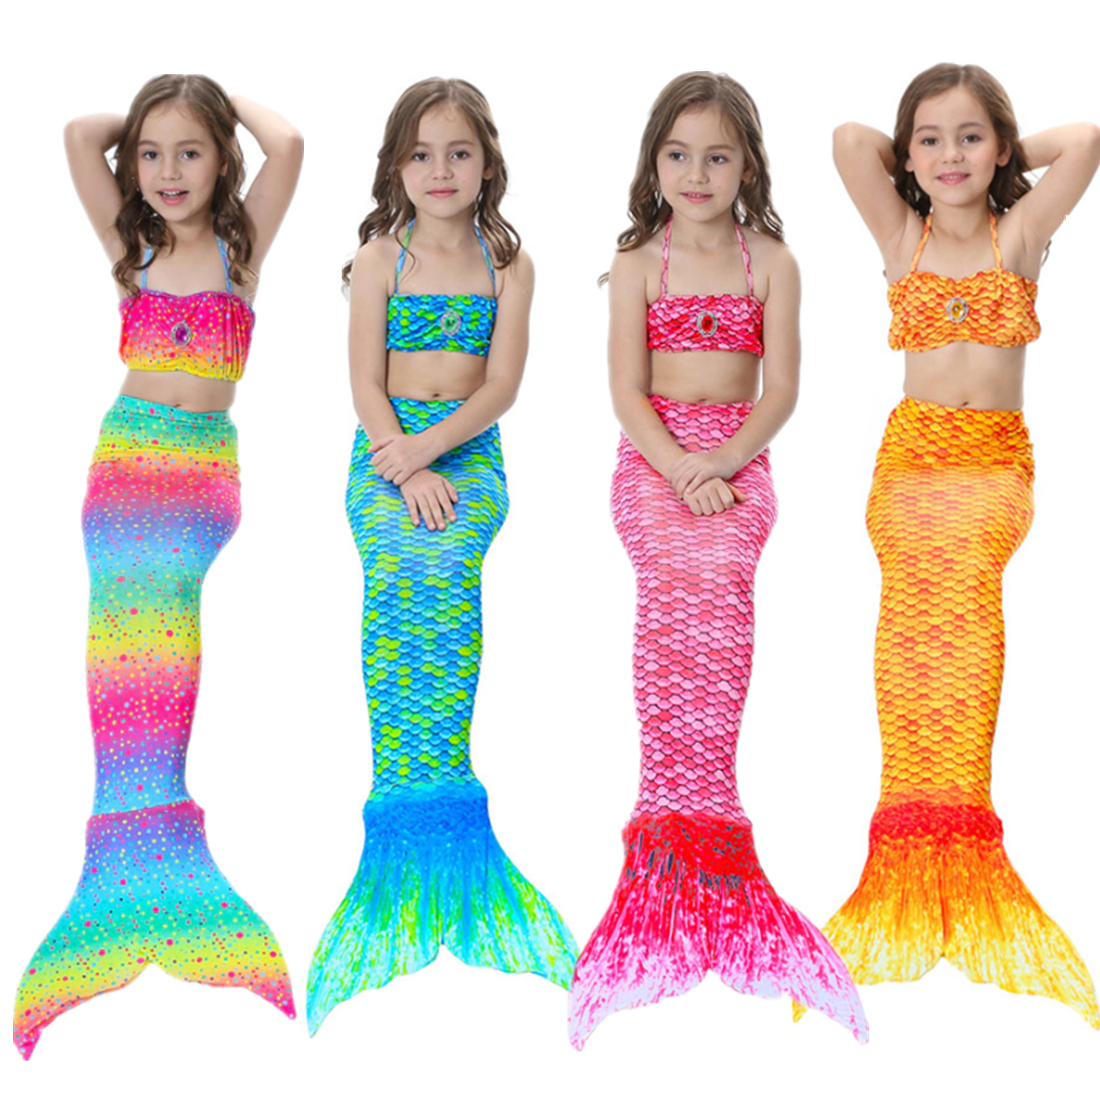 Kids Girls Mermaid Tail Bikini Swimsuit Costume Swimwear 3 Pcs Set 3-12 Years